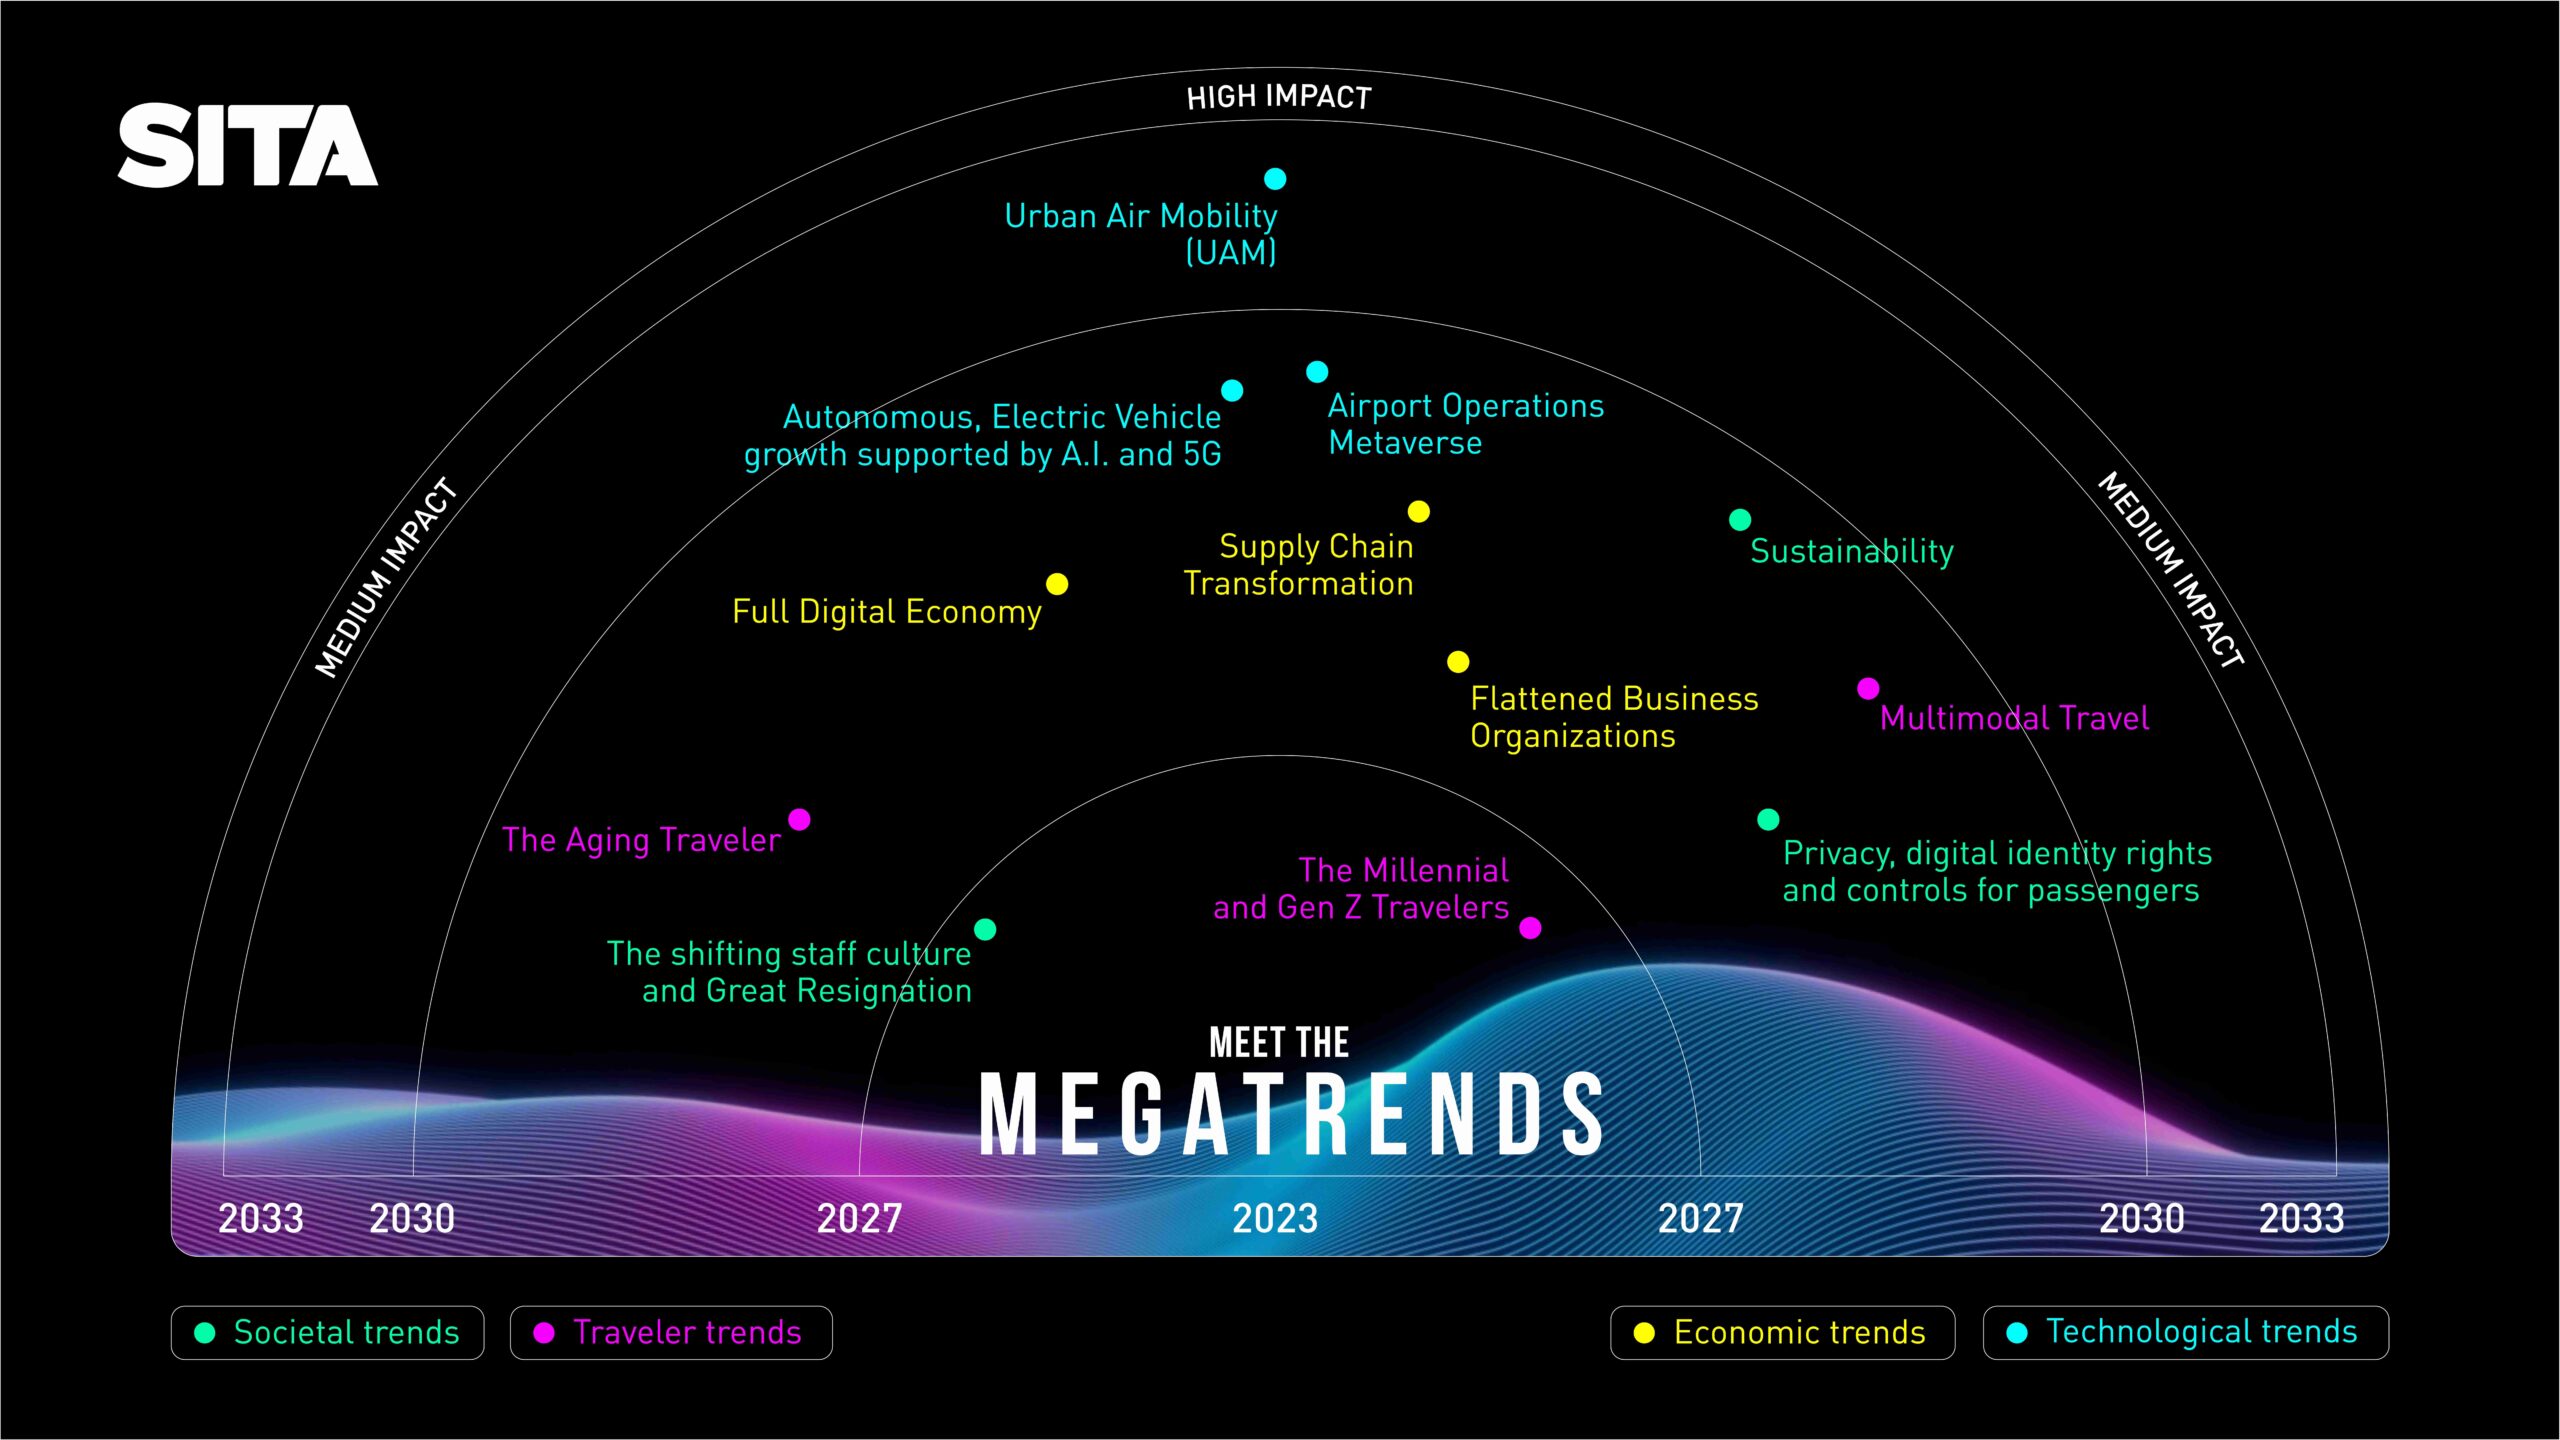 Meet the Megatrends